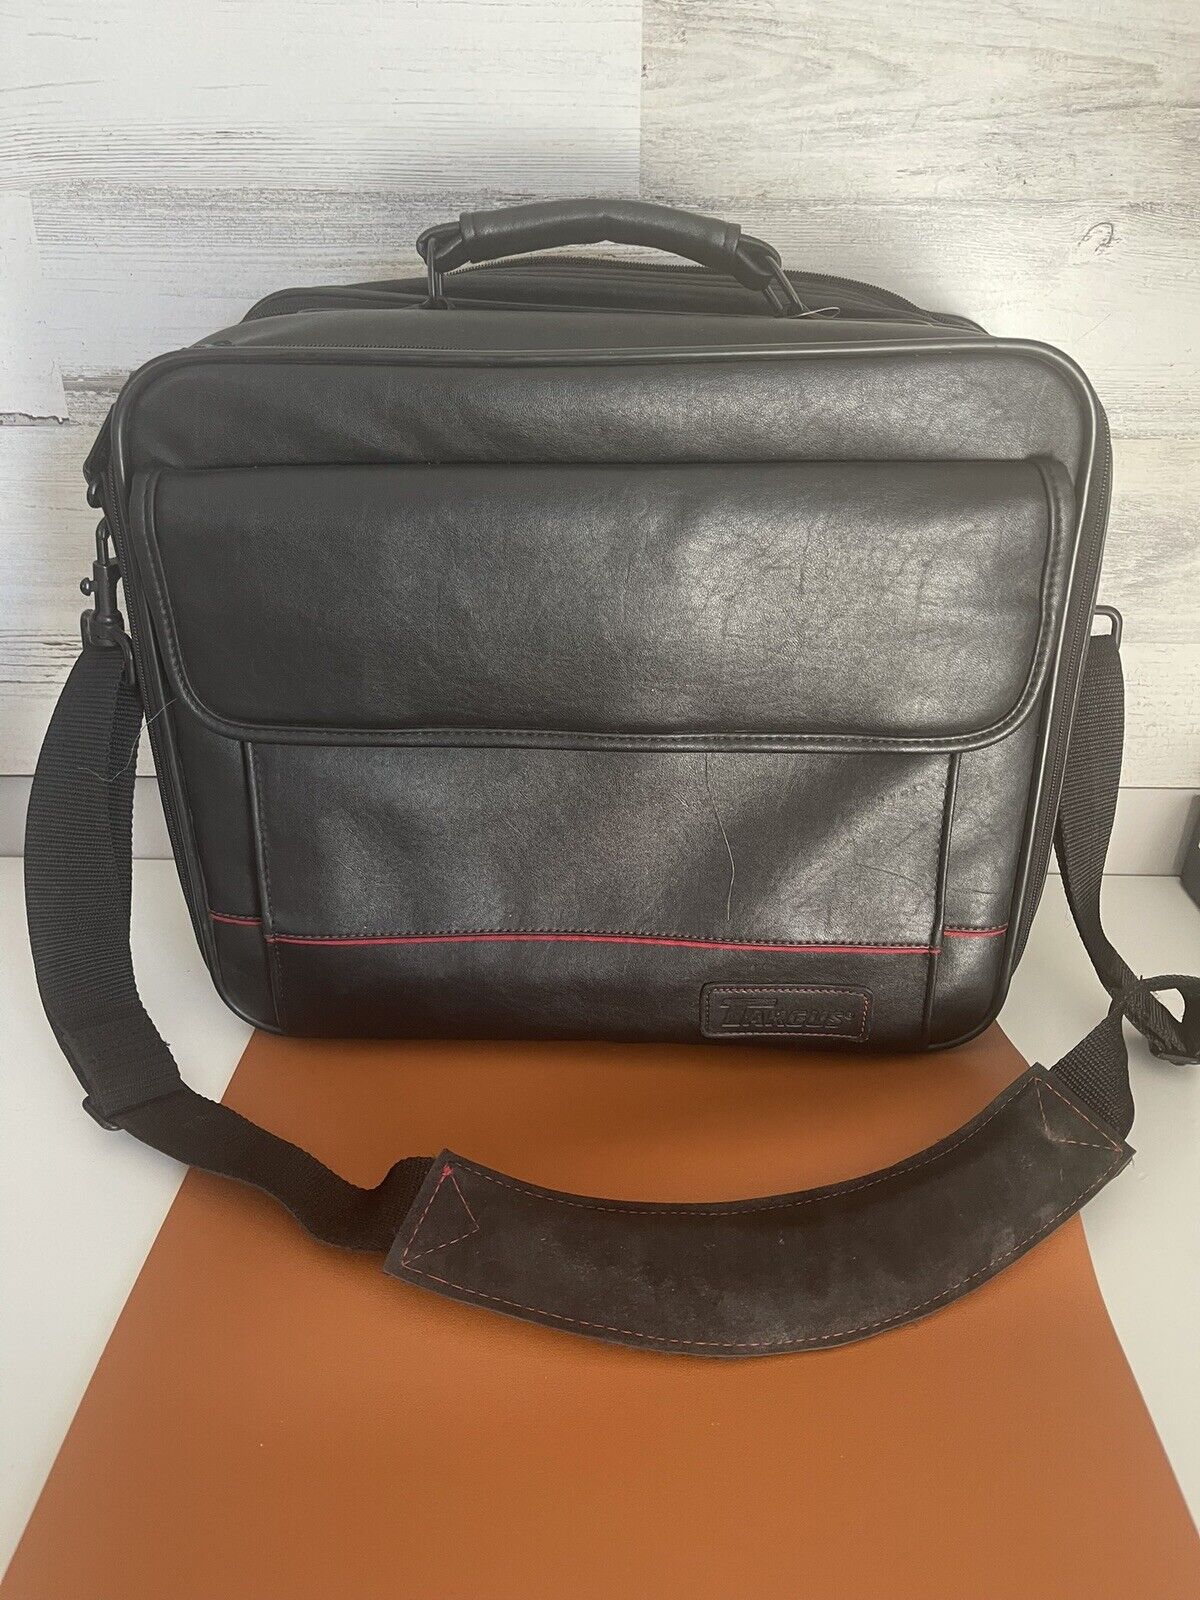 Vintage Targus Laptop Bag Case Large Leather Black Padded Shoulder Strap